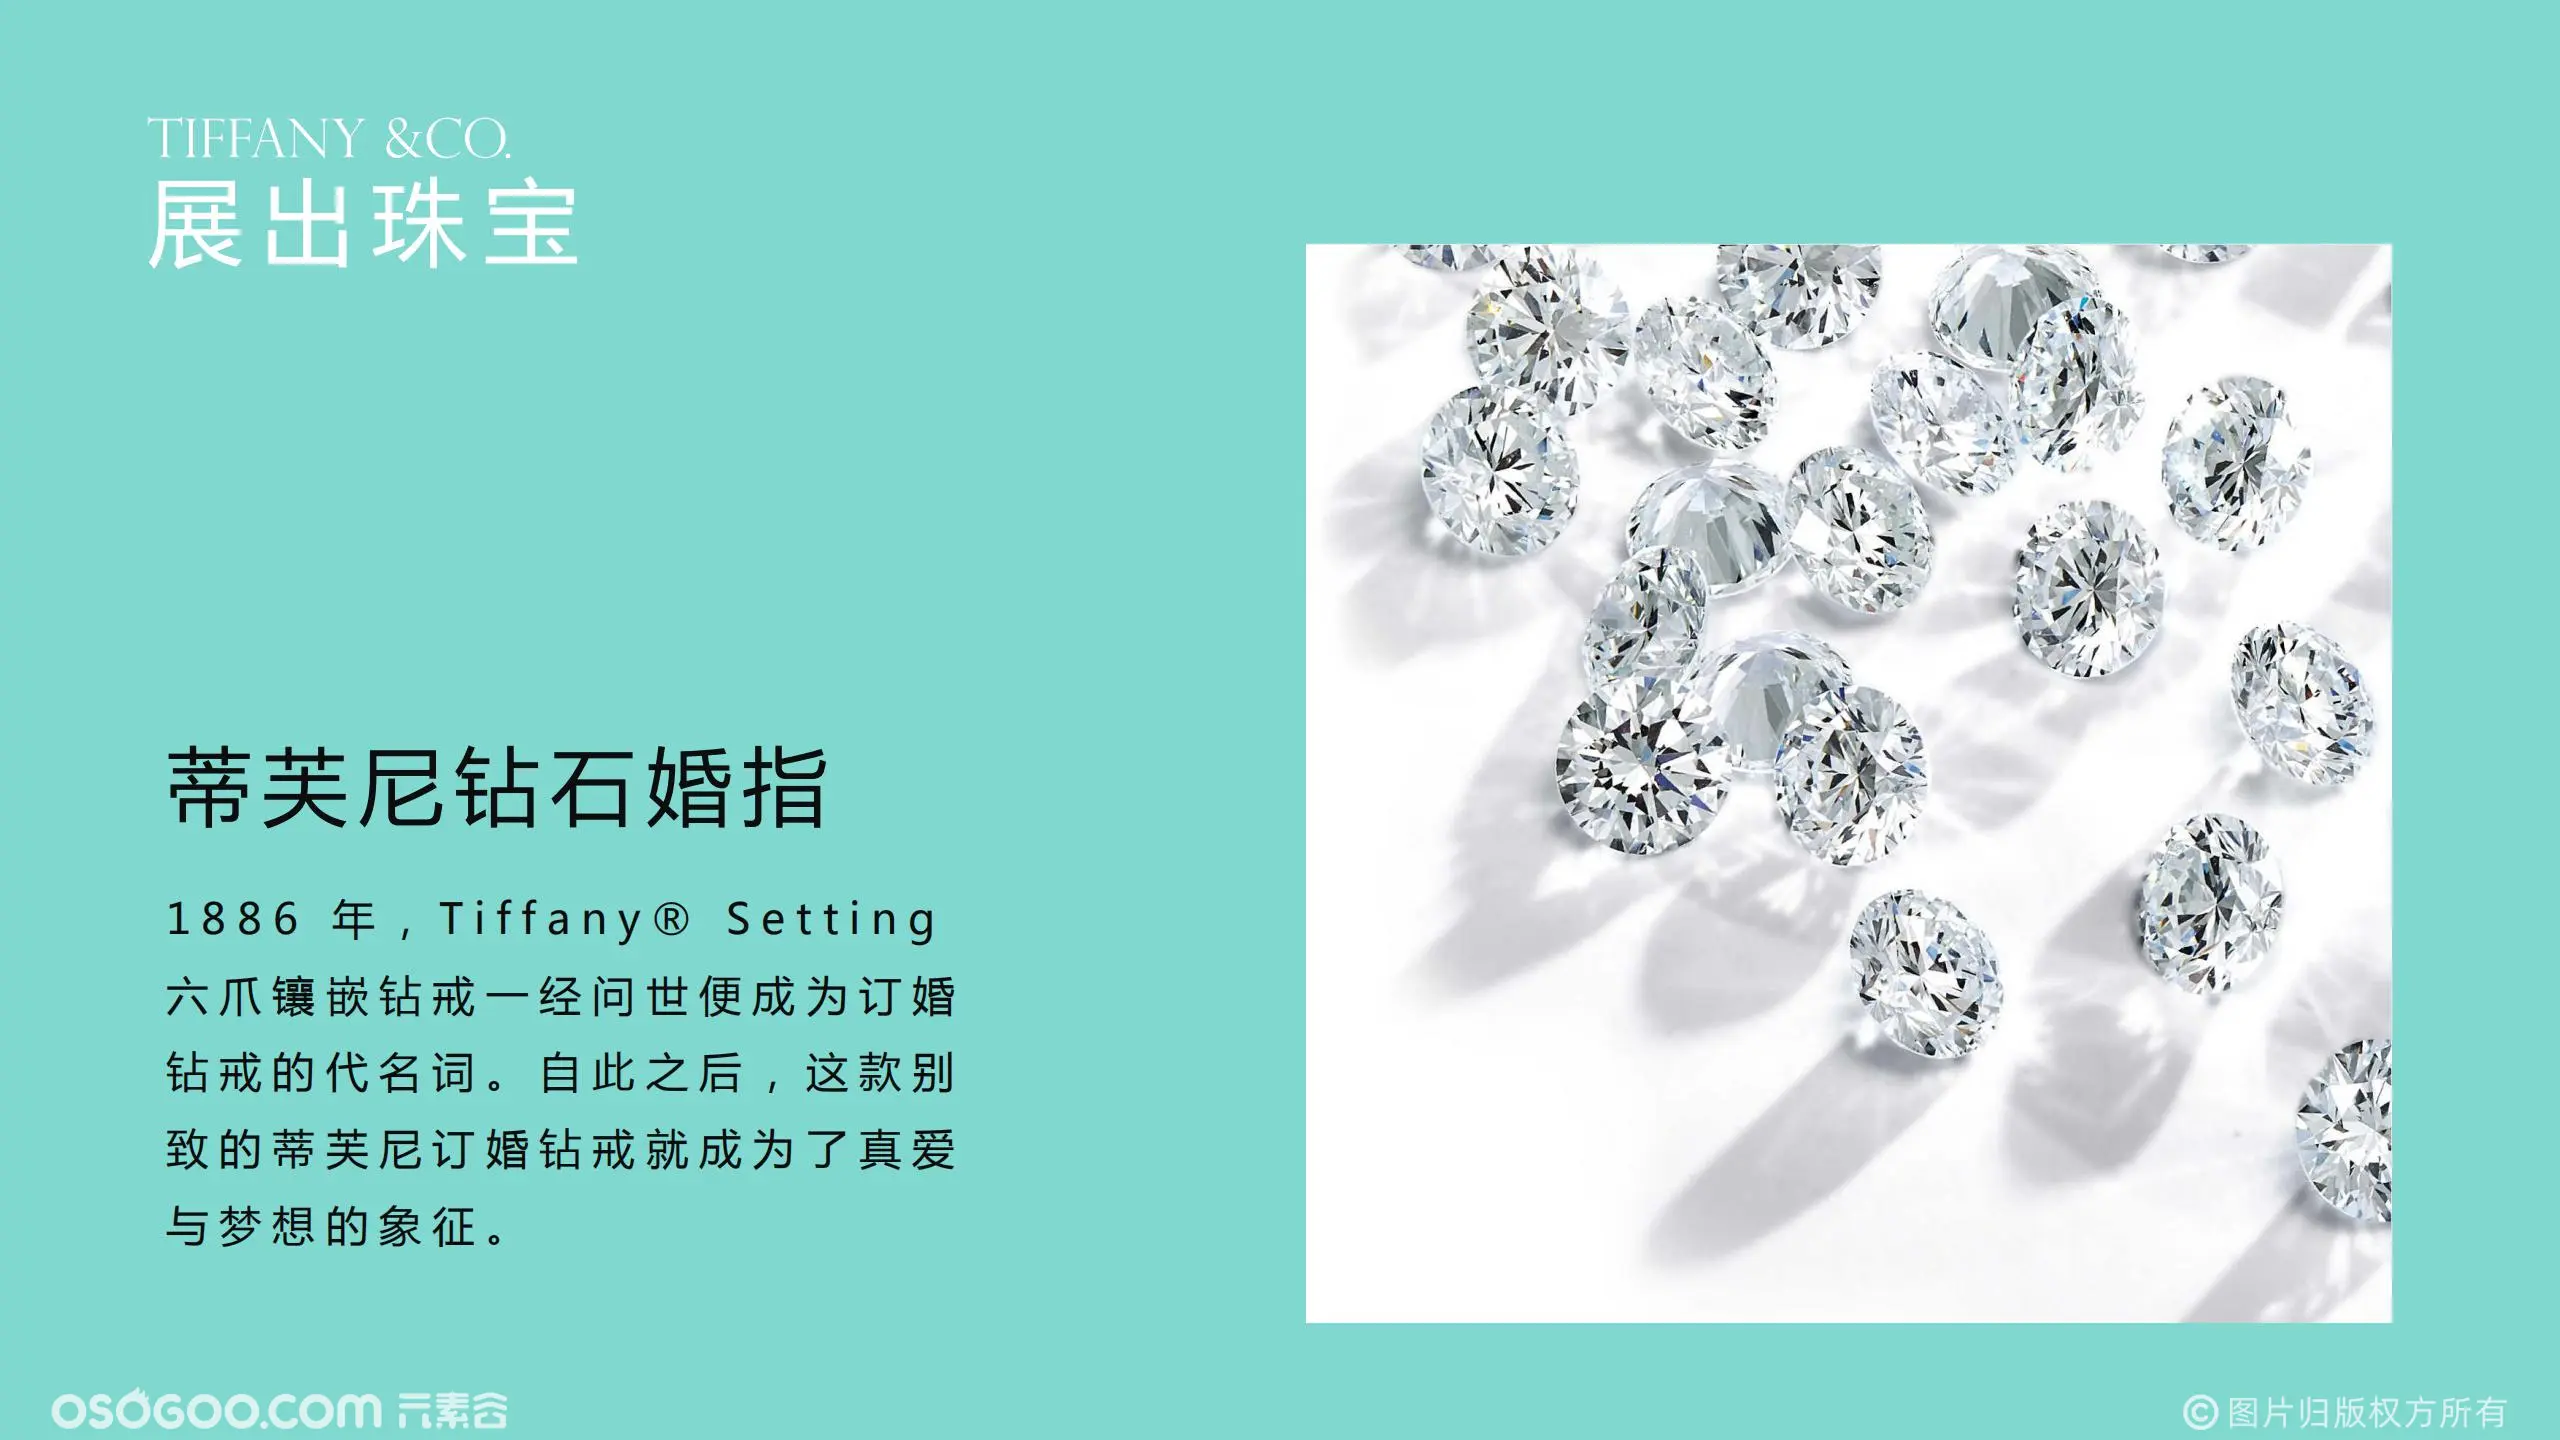 Tiffany 奢侈品蒂芙尼璀璨珠宝展览展示